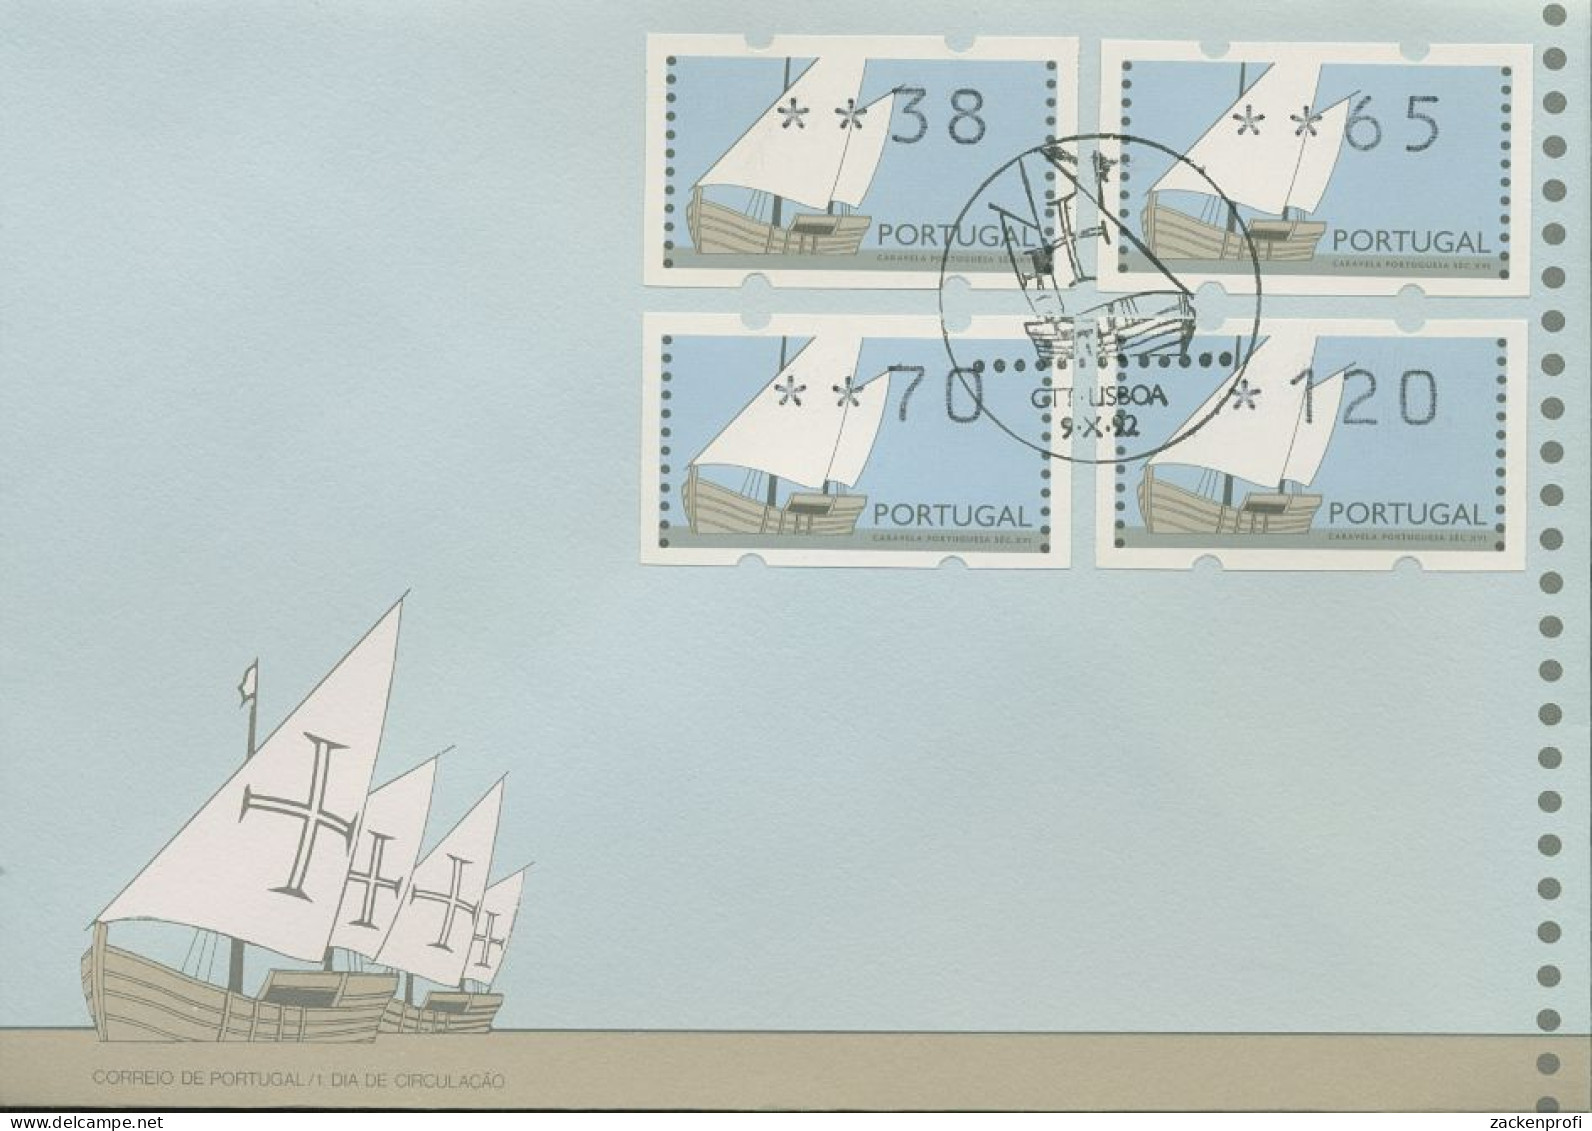 Portugal ATM 1992 Segelschiffe Satz 4 Werte 38/65/70/120 ATM 5 S1 FDC (X80359) - Timbres De Distributeurs [ATM]